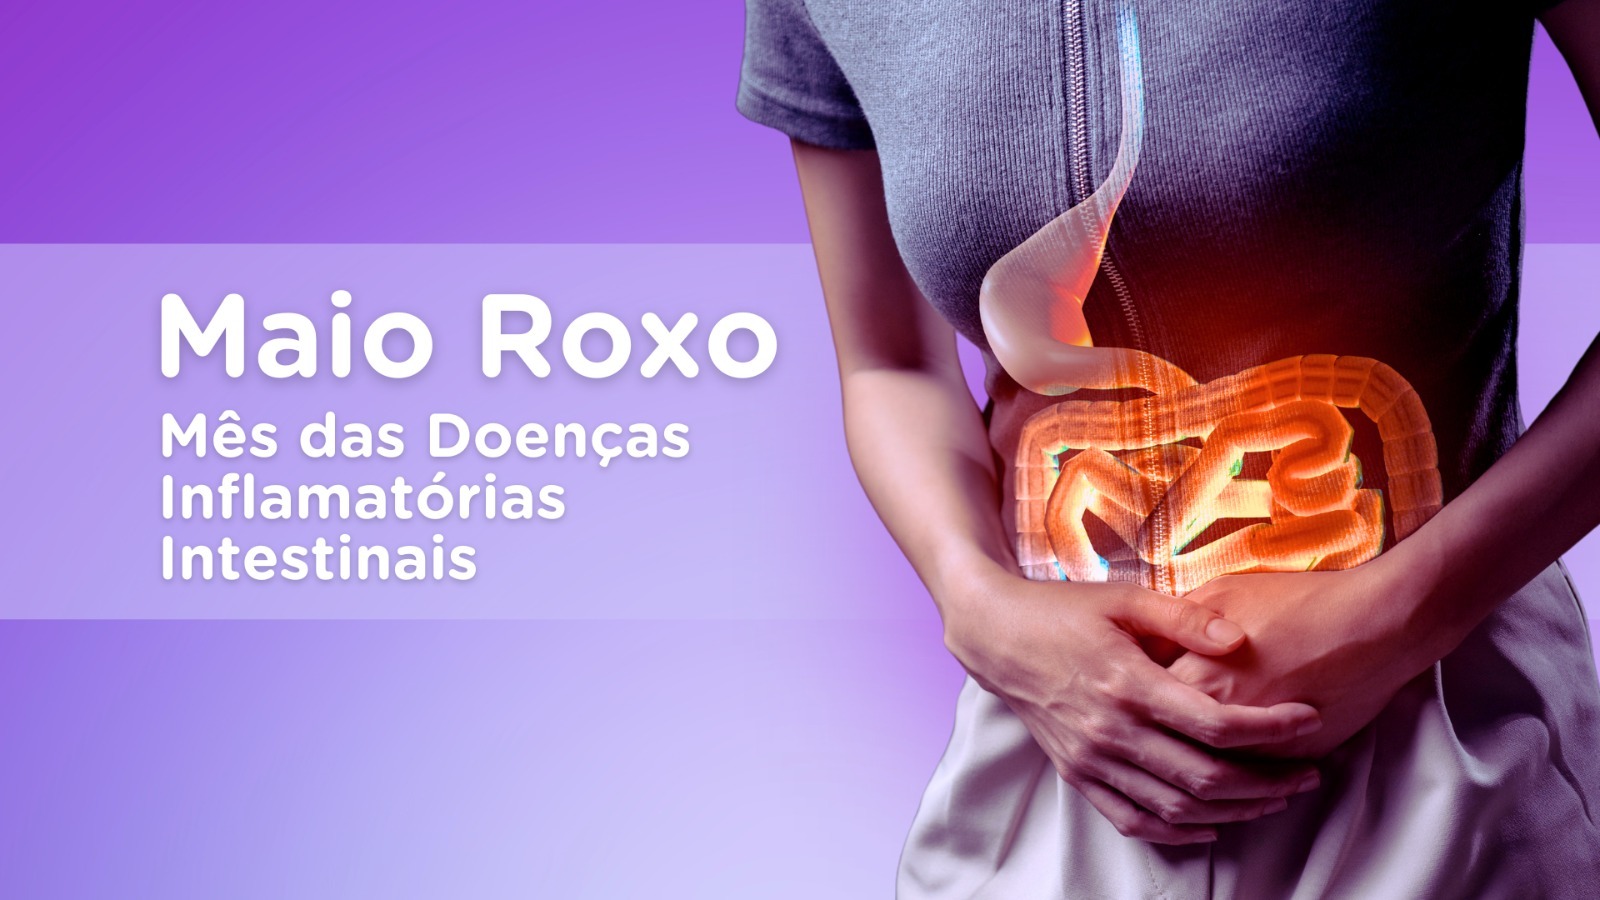 Evangelico - Blog - Maio Roxo - Doenca Inflamatoria Intestinal - Capa completa